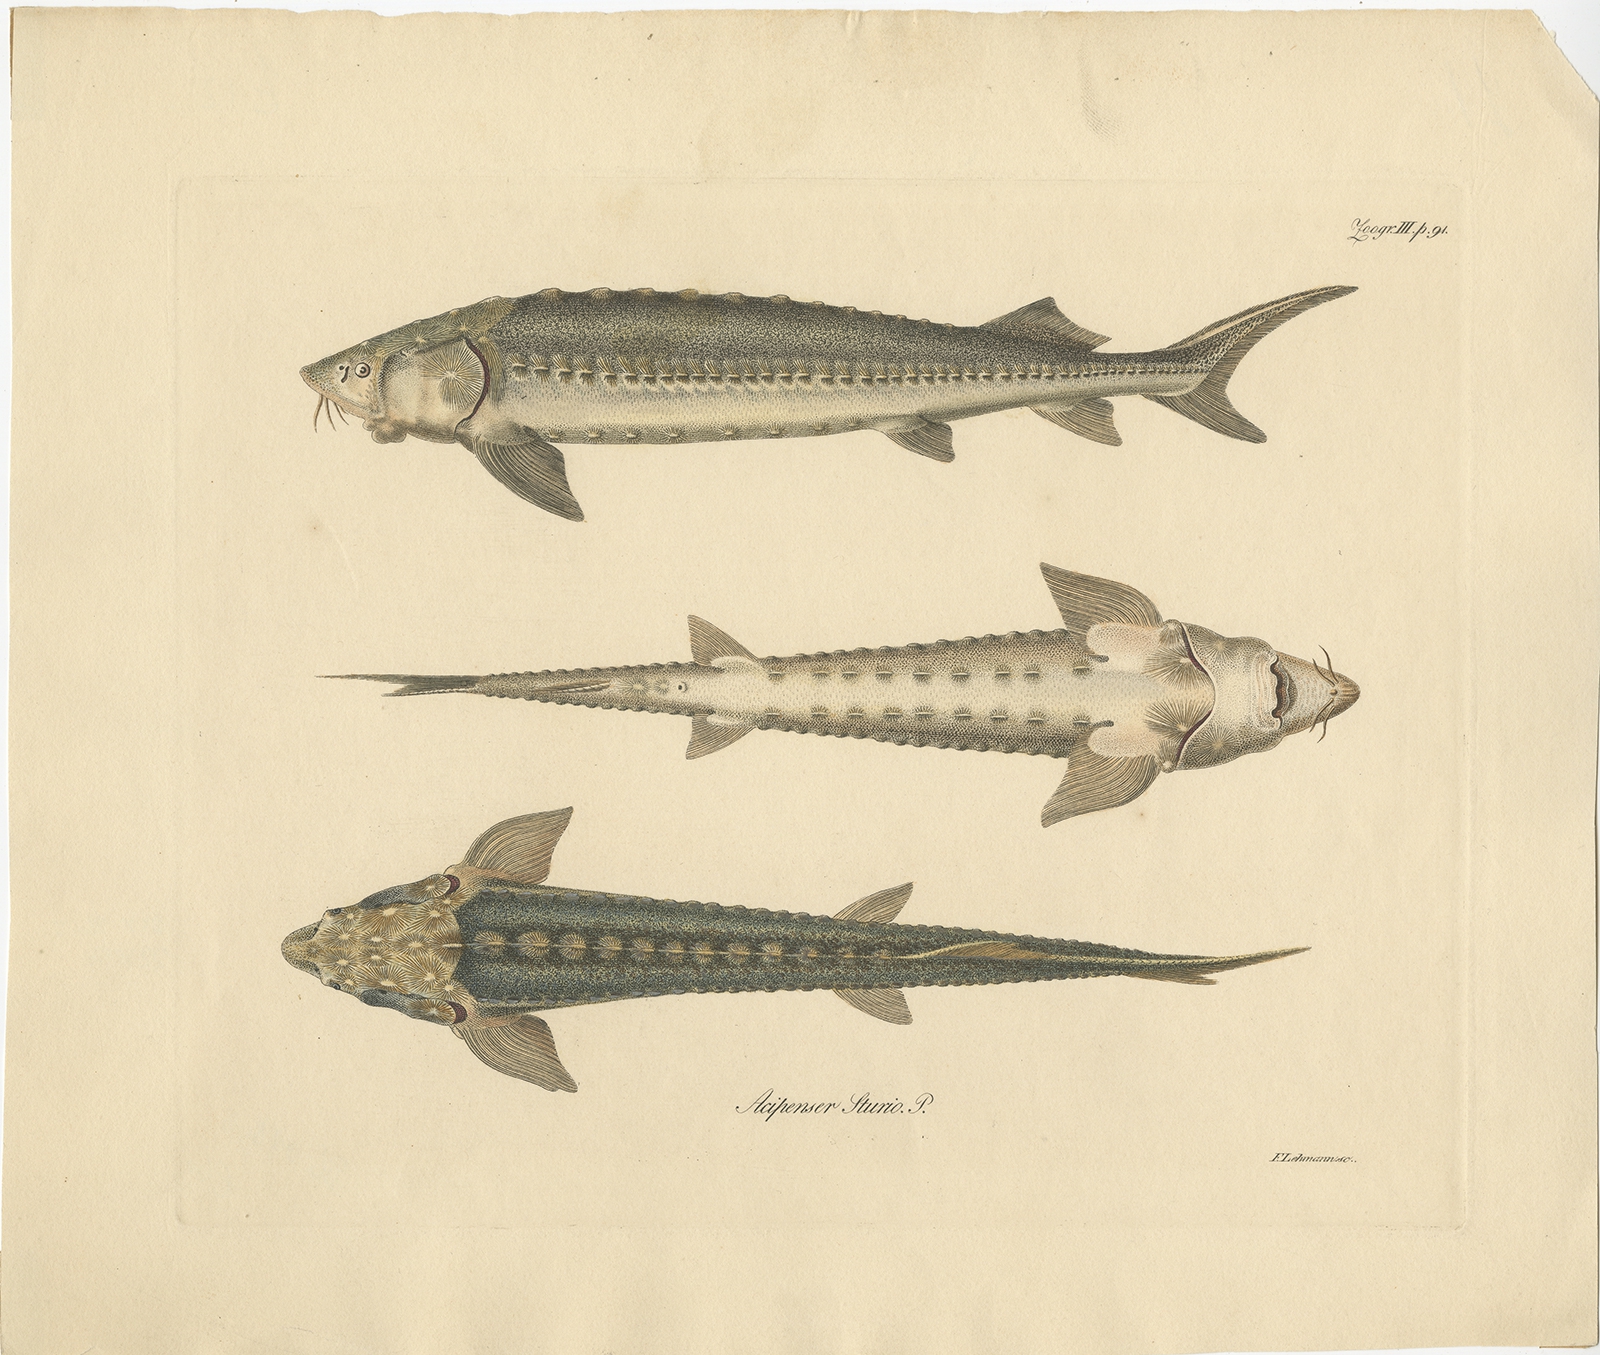 Antique Fish Print of the European Sea Sturgeon by Lehmann (c.1860)